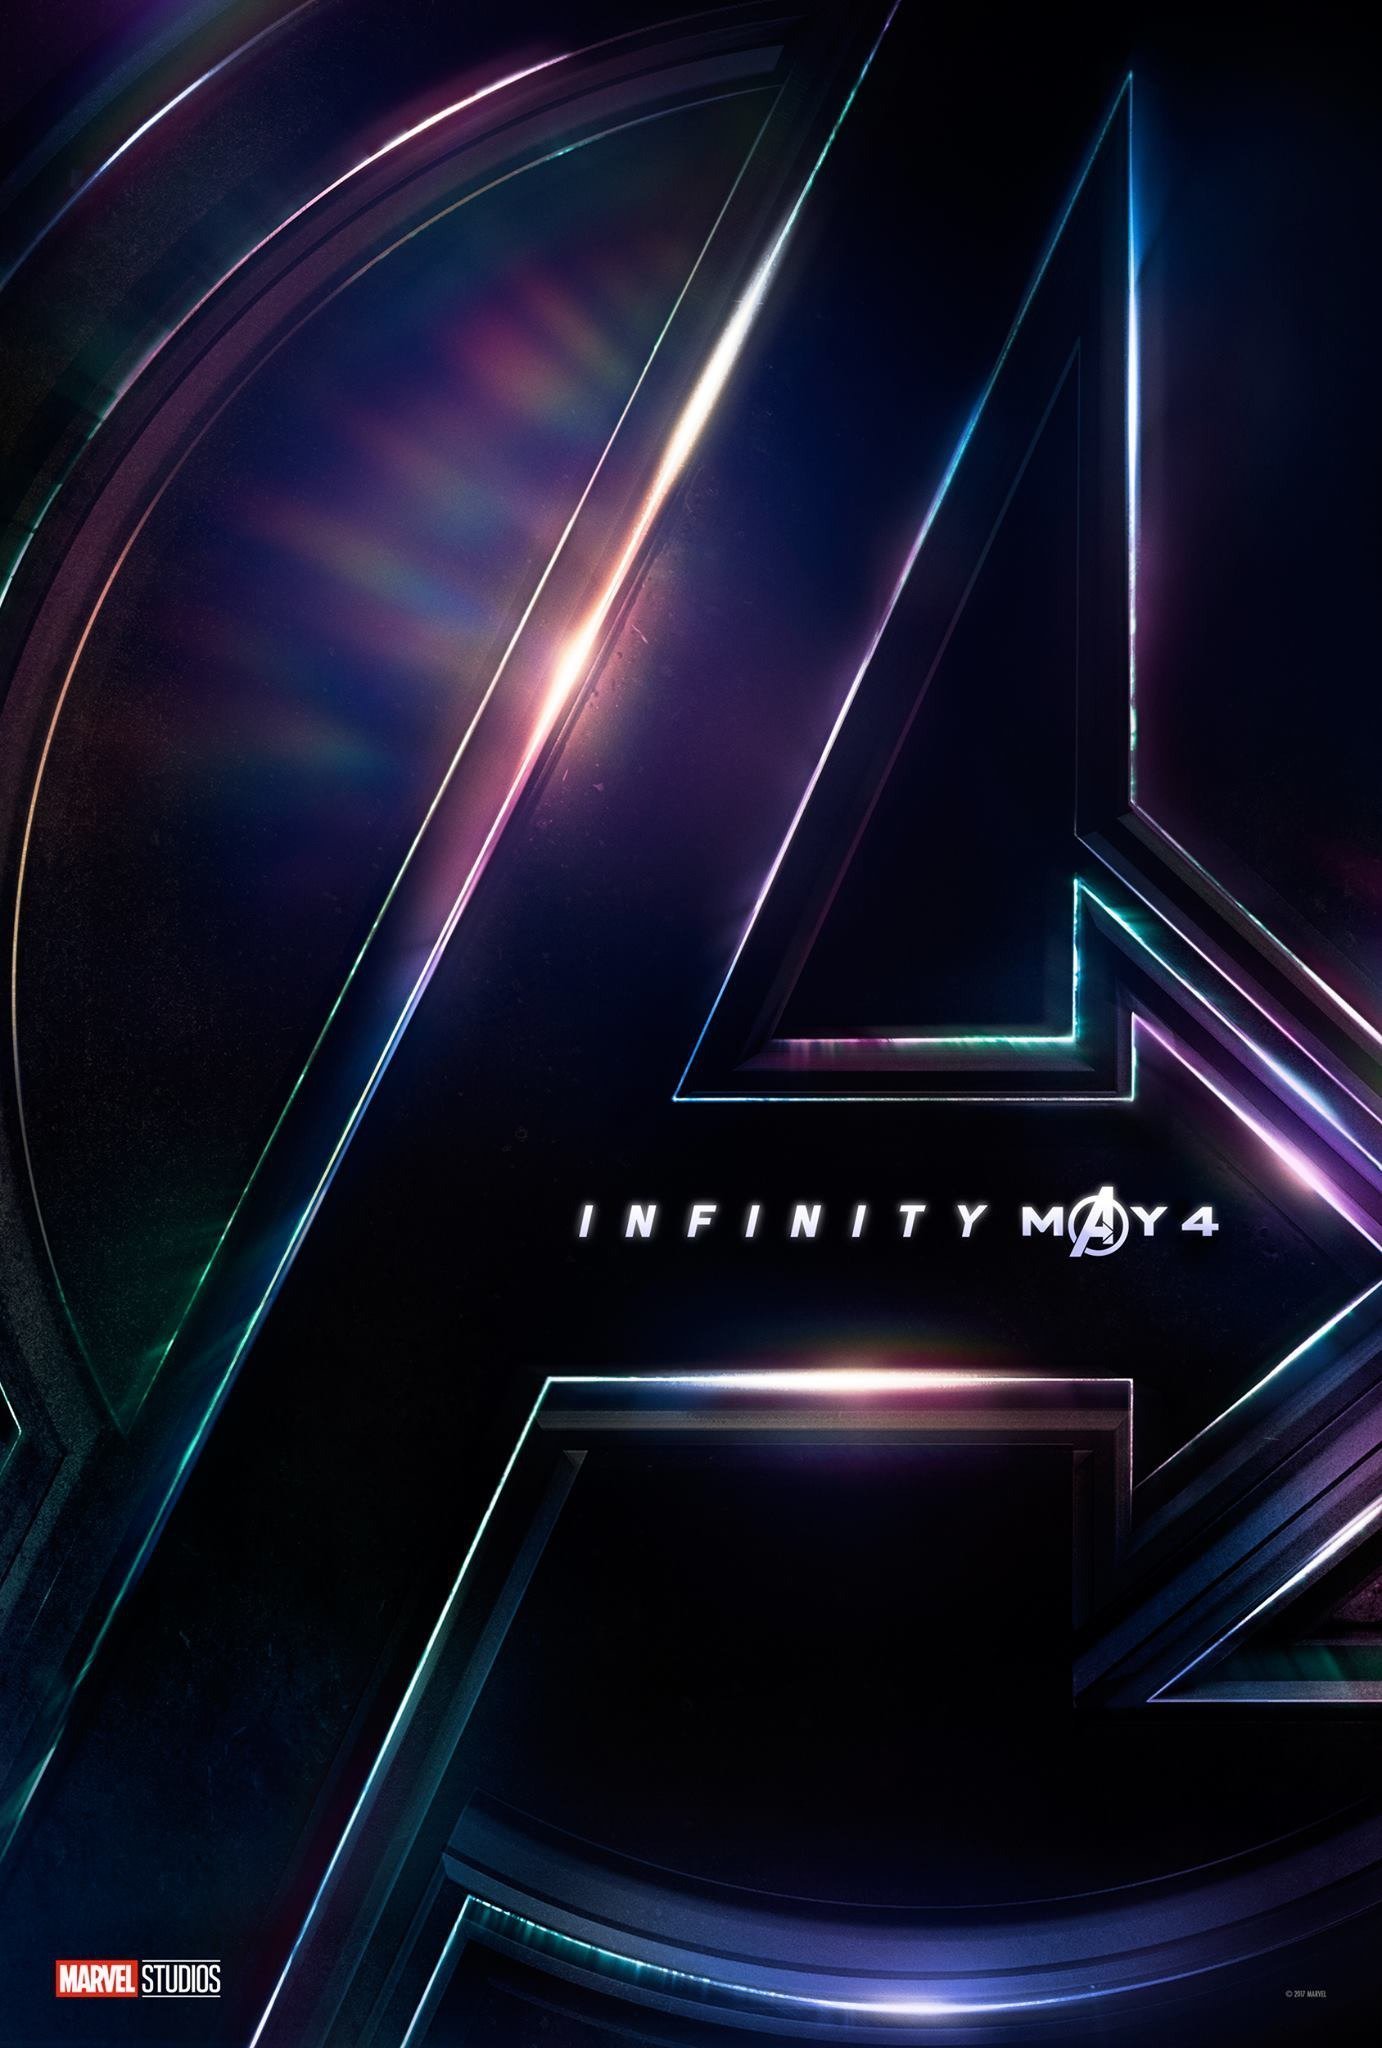 Poster teaser avec le logo pour le film Avengers: Infinity War